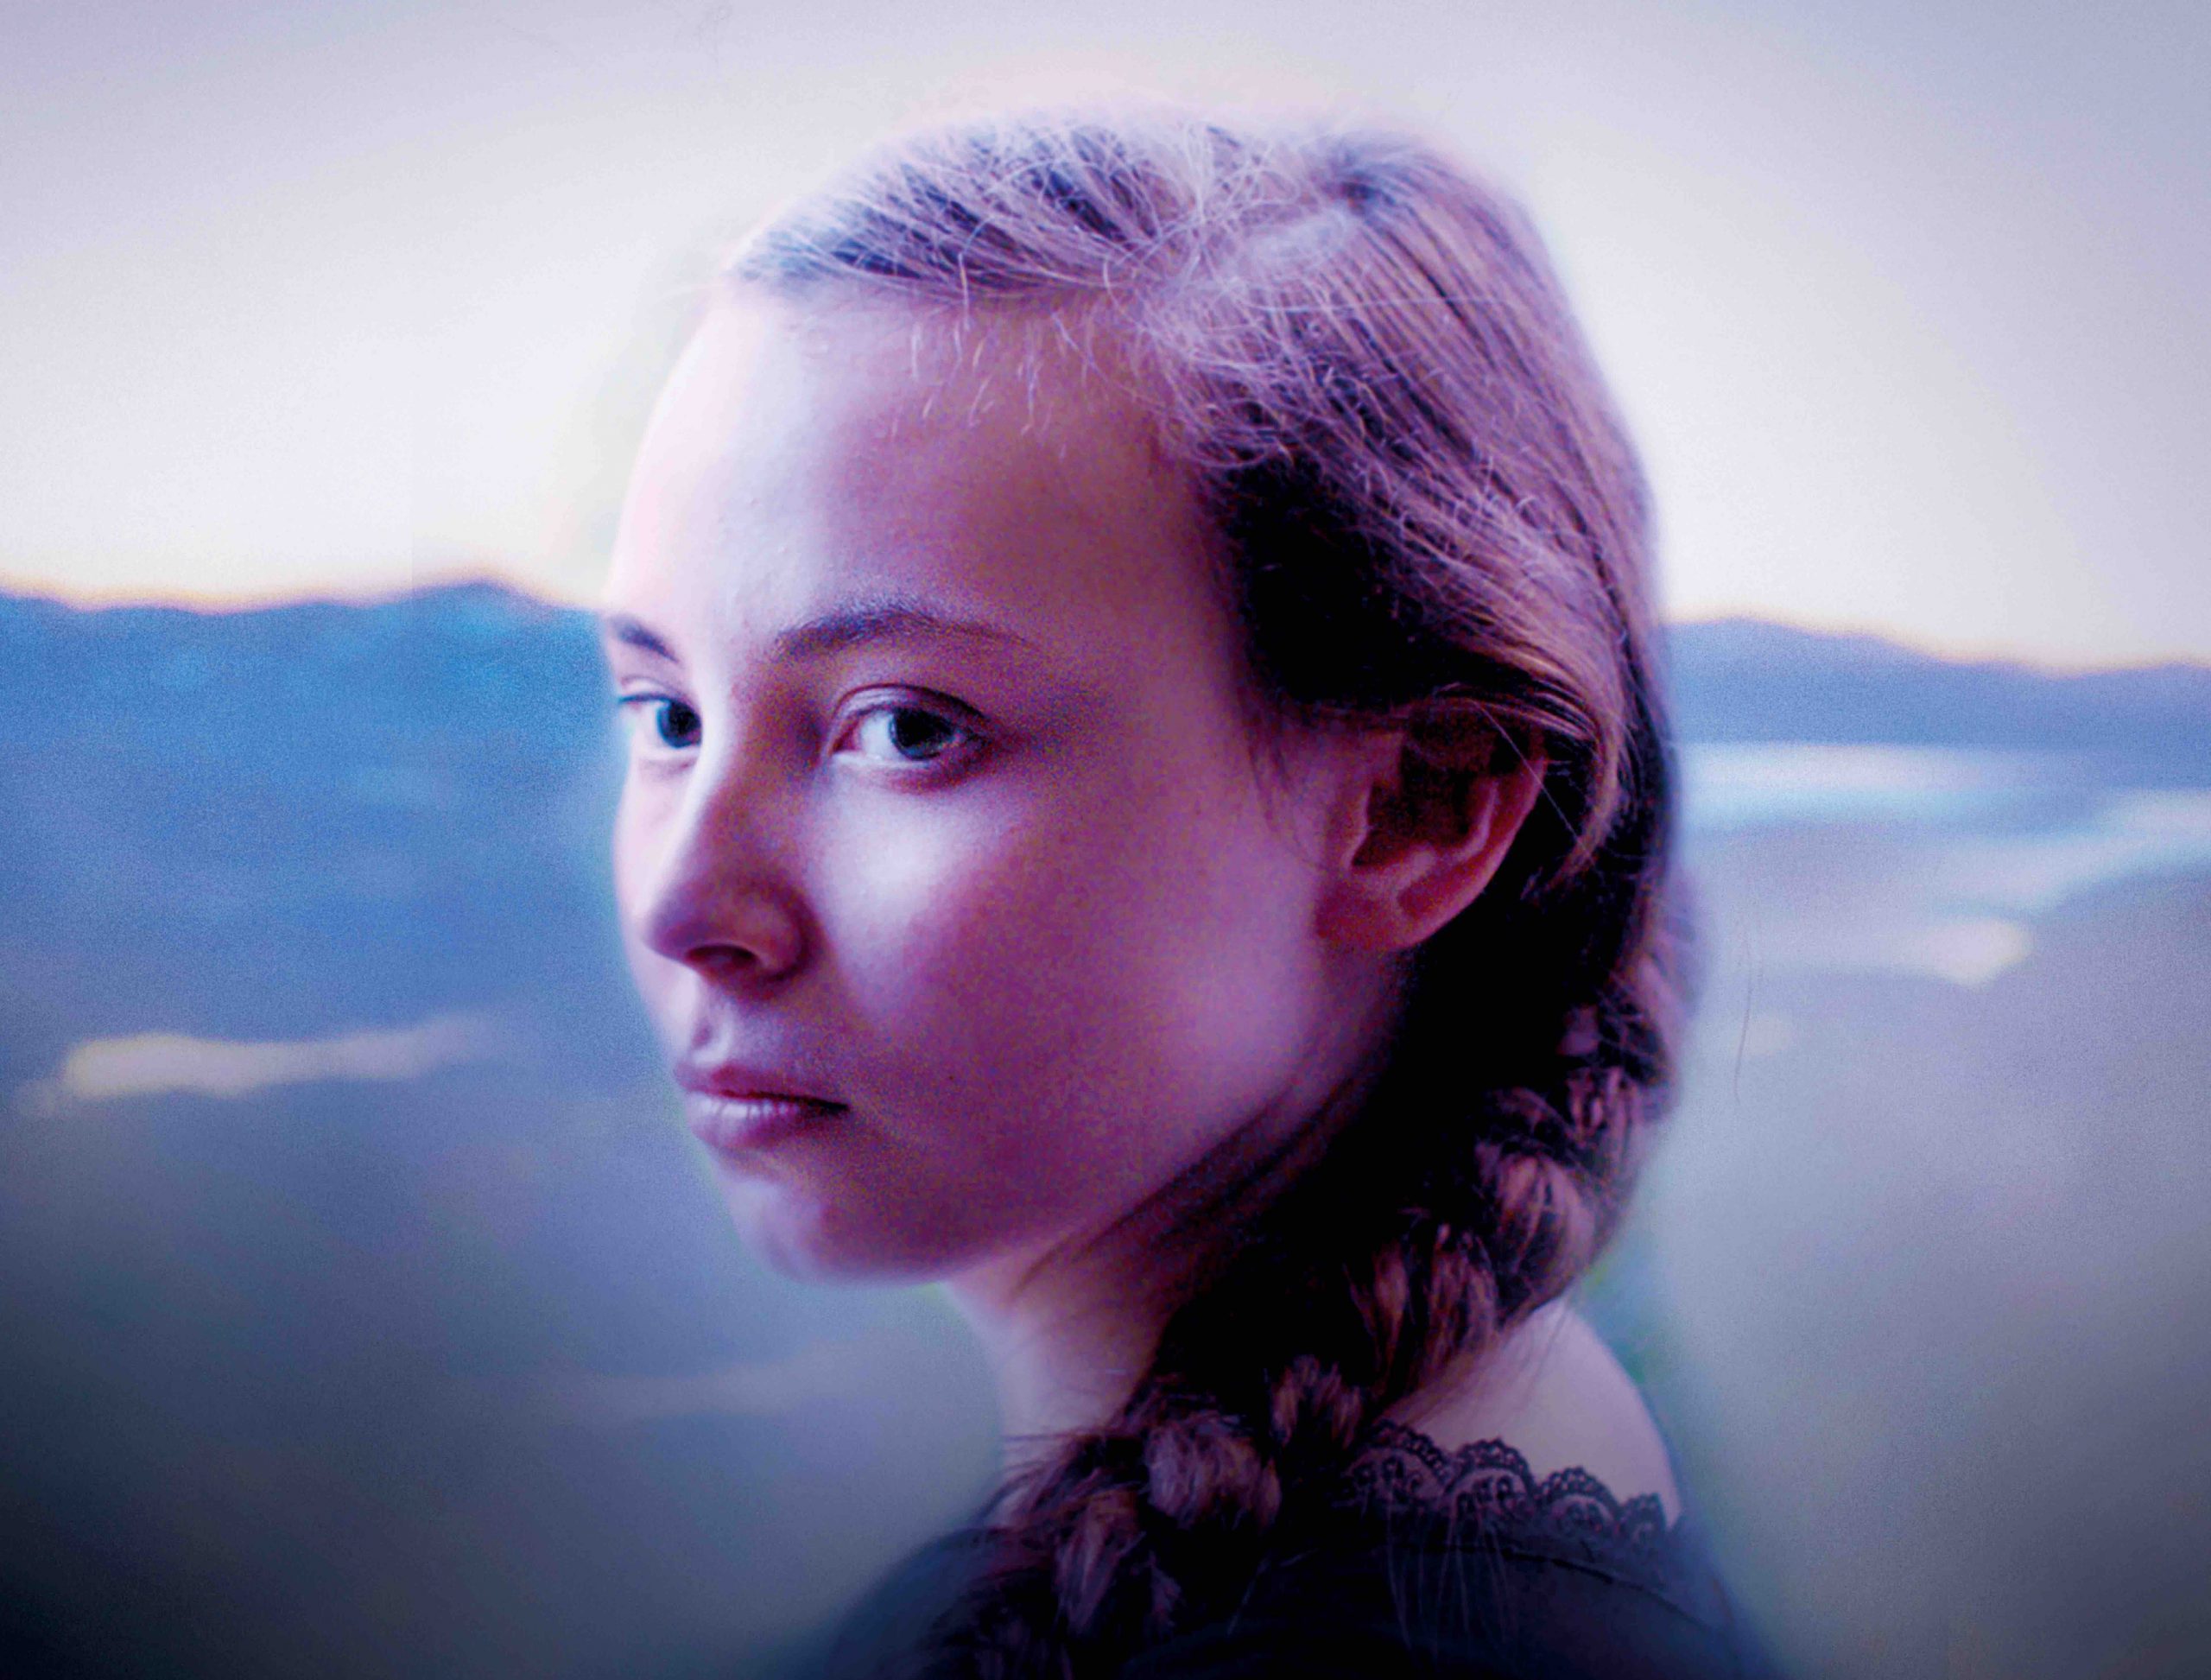 Ausschnitt des Filmplakats zu "Das Mädchen aus dem Norden": Ein Mädchen mit geflochtenem Zopf vor einer weiten Landschaft.